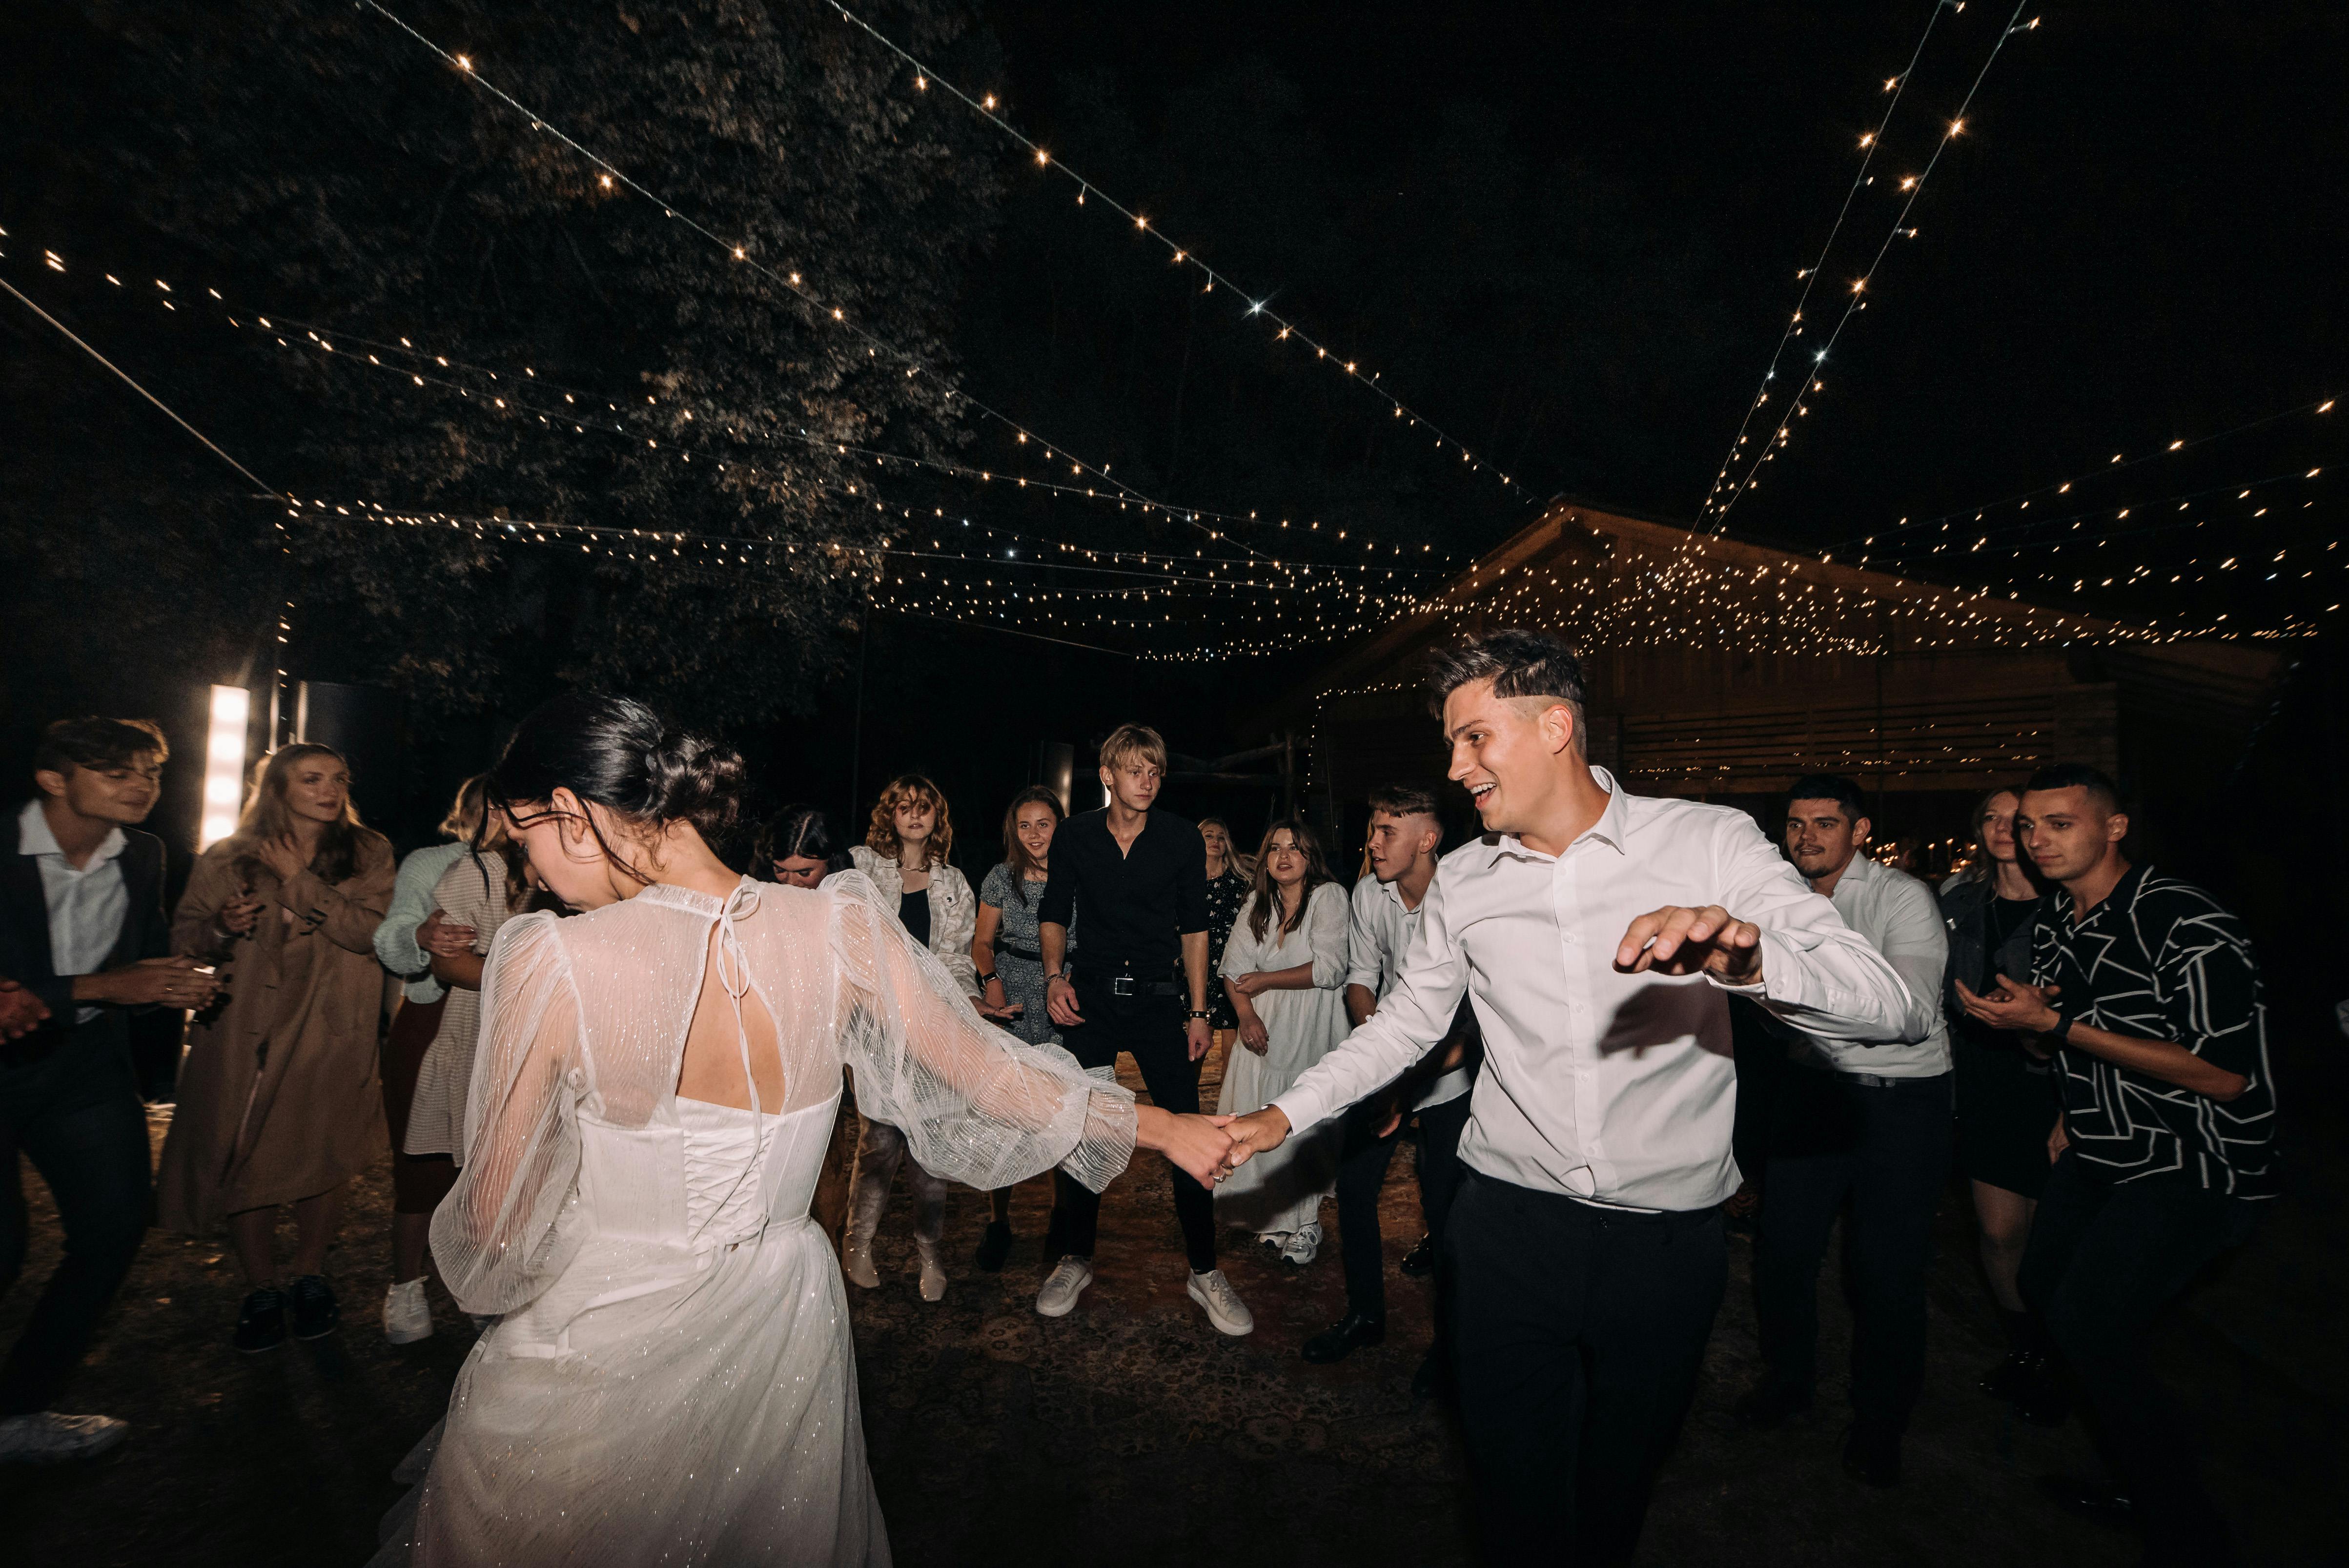 Una pareja bailando en su boda mientras los invitados miran | Fuente: Pexels